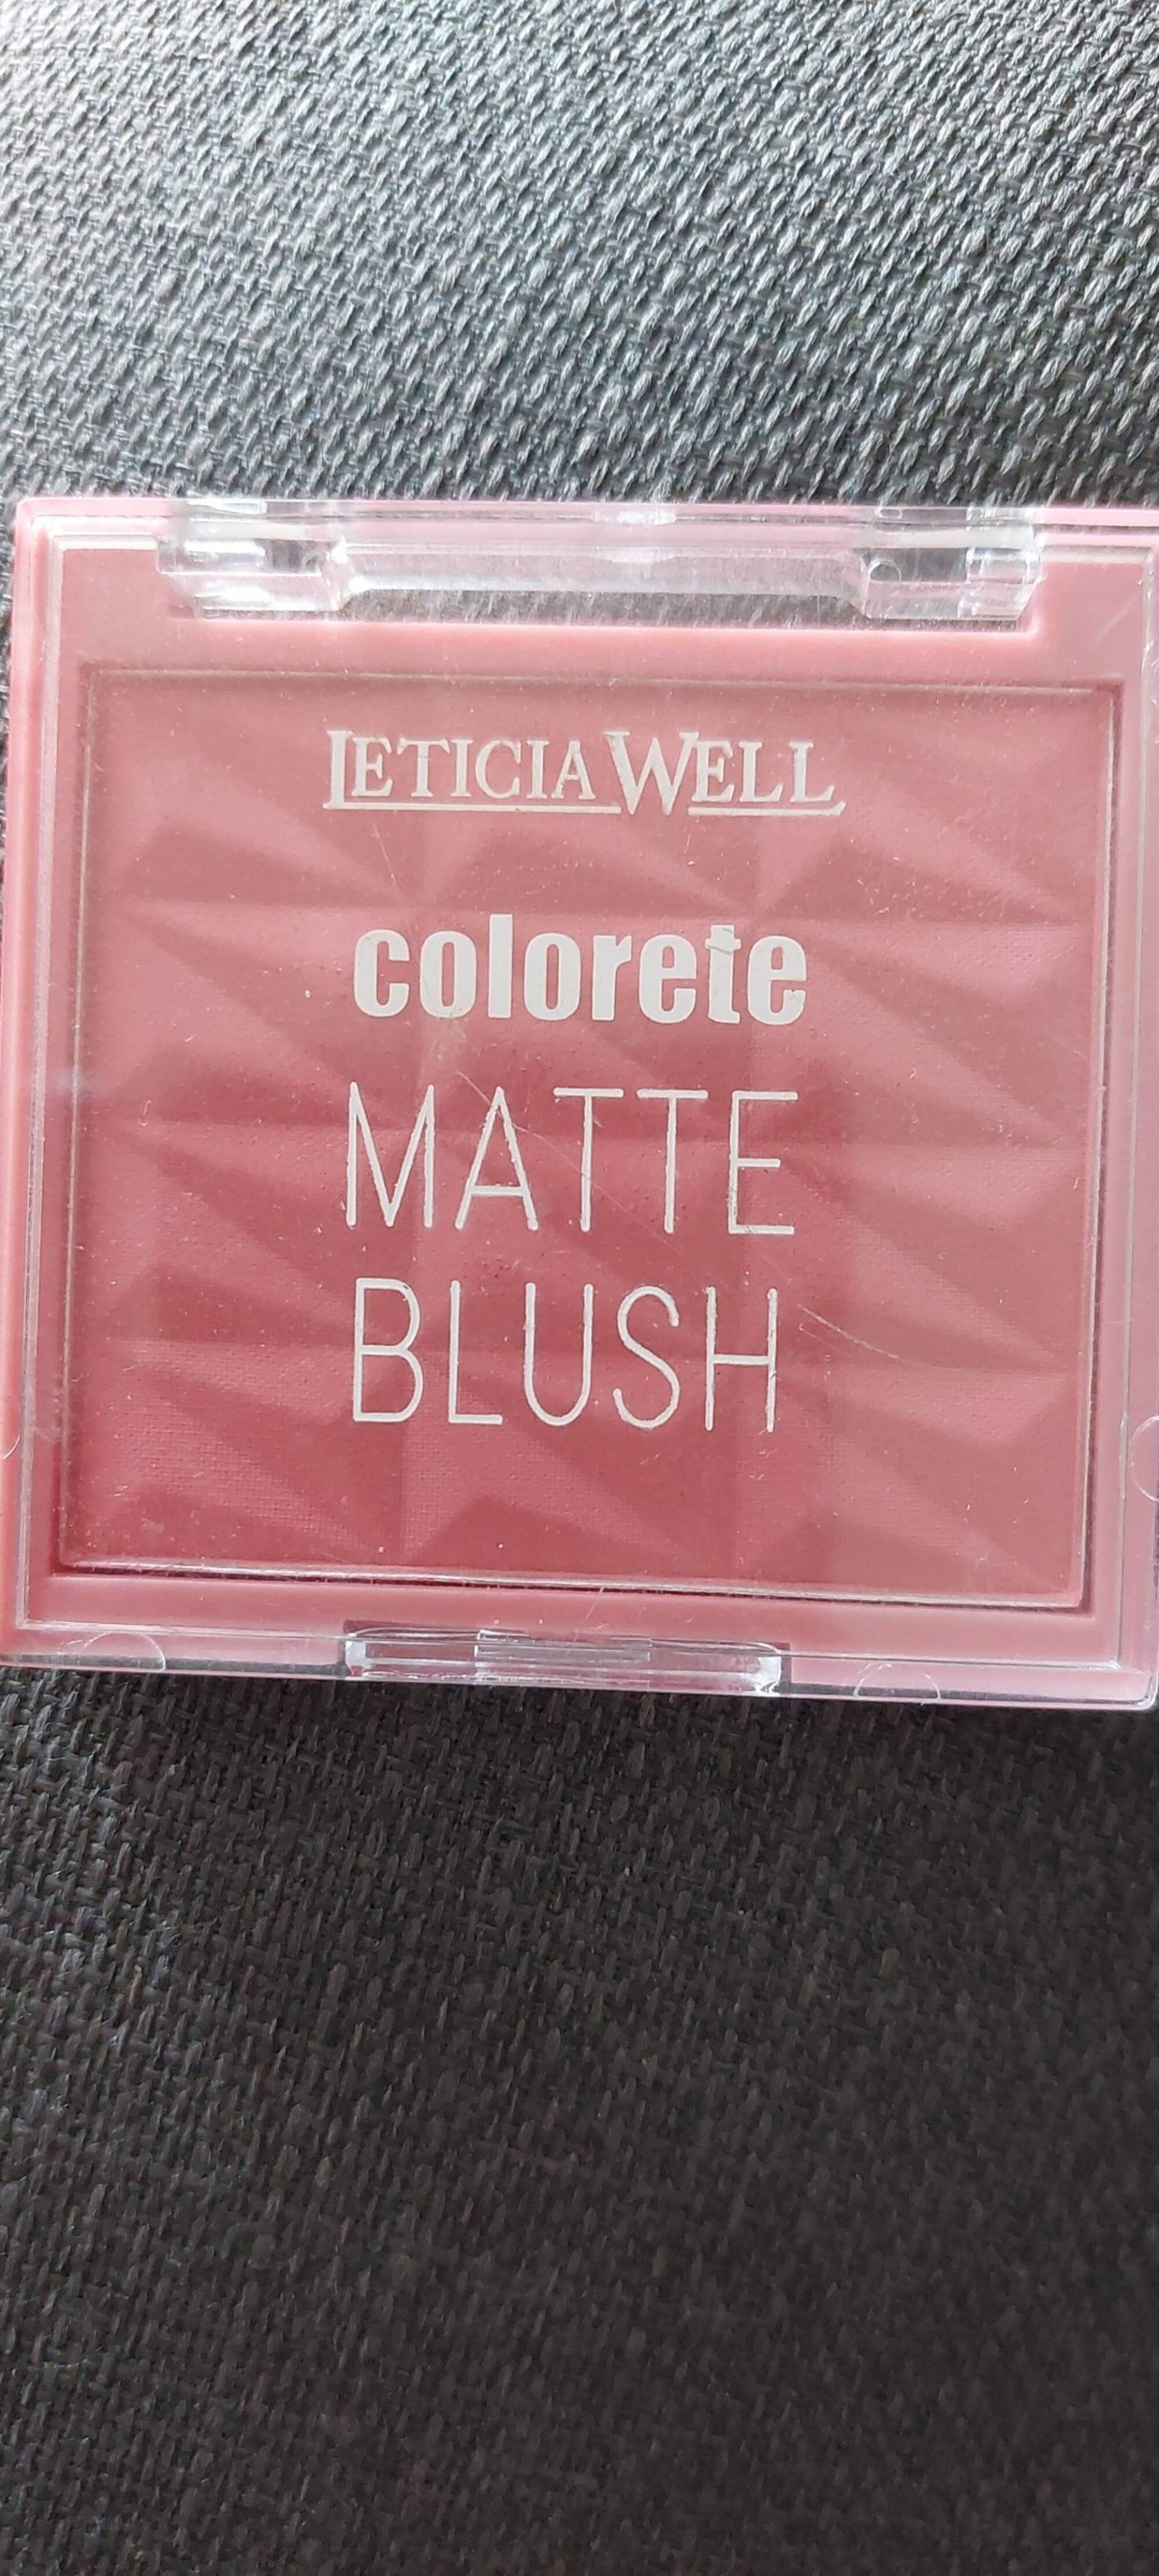 LETICIA WELL - Colorete matte blush 221 